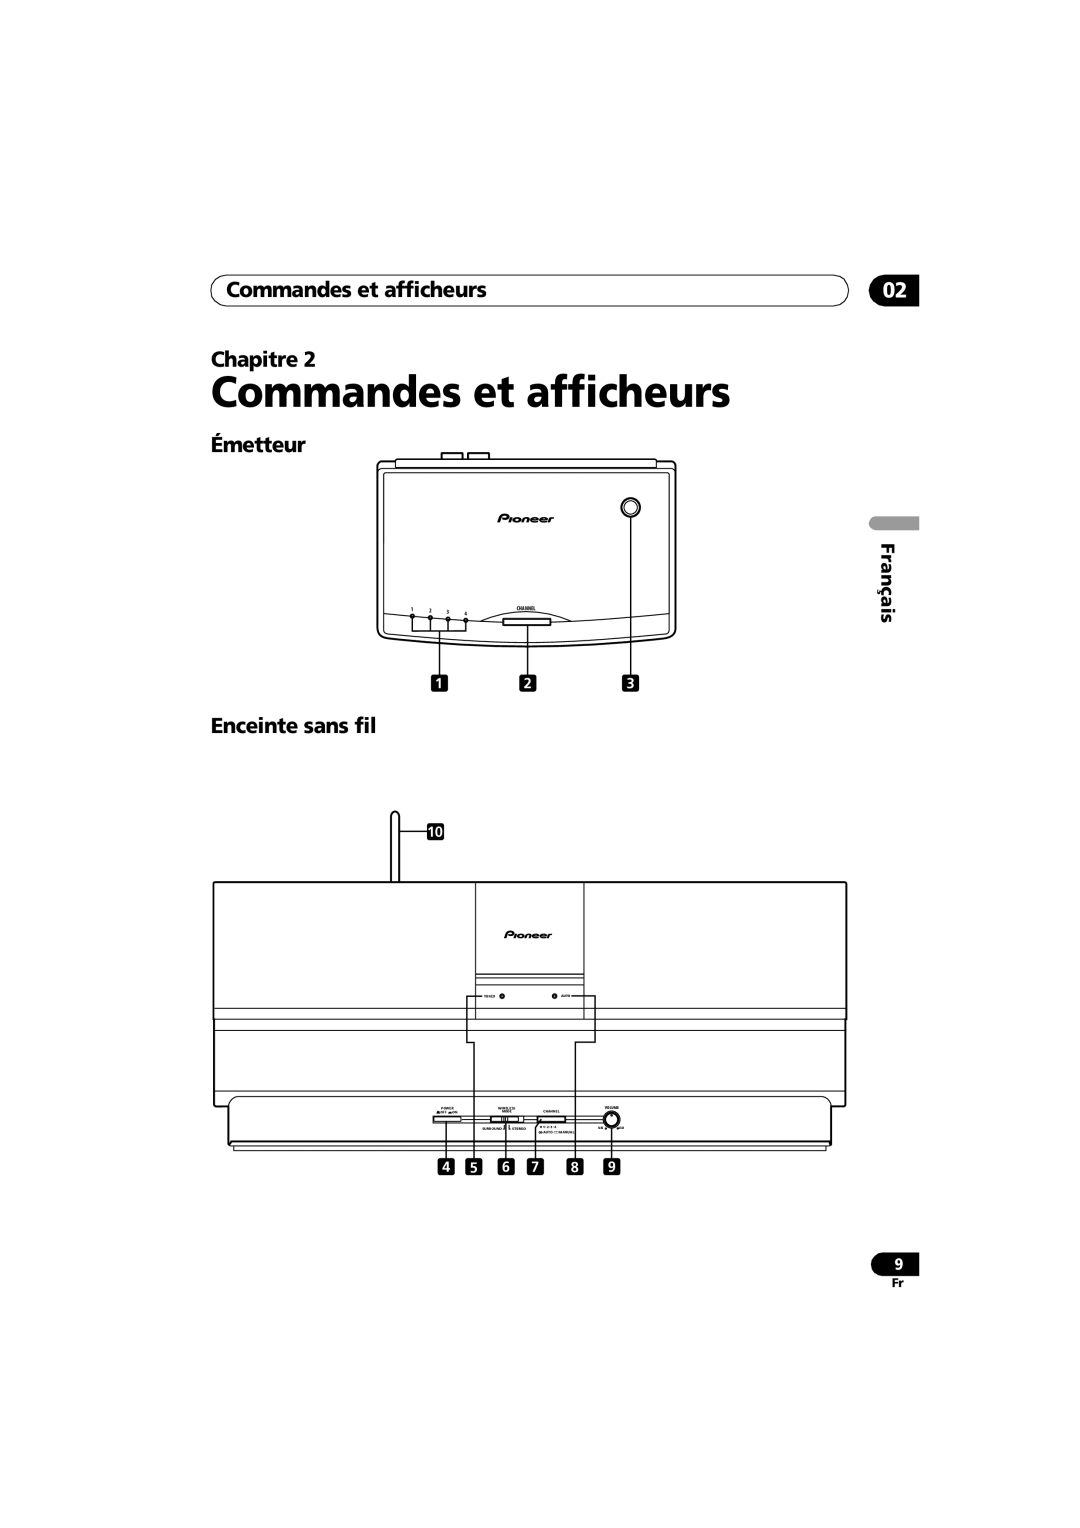 Pioneer XW-HTD630A Commandes et afficheurs Chapitre, Émetteur, Enceinte sans fil, Français, 午後１時２７分, Channel, Tuned 